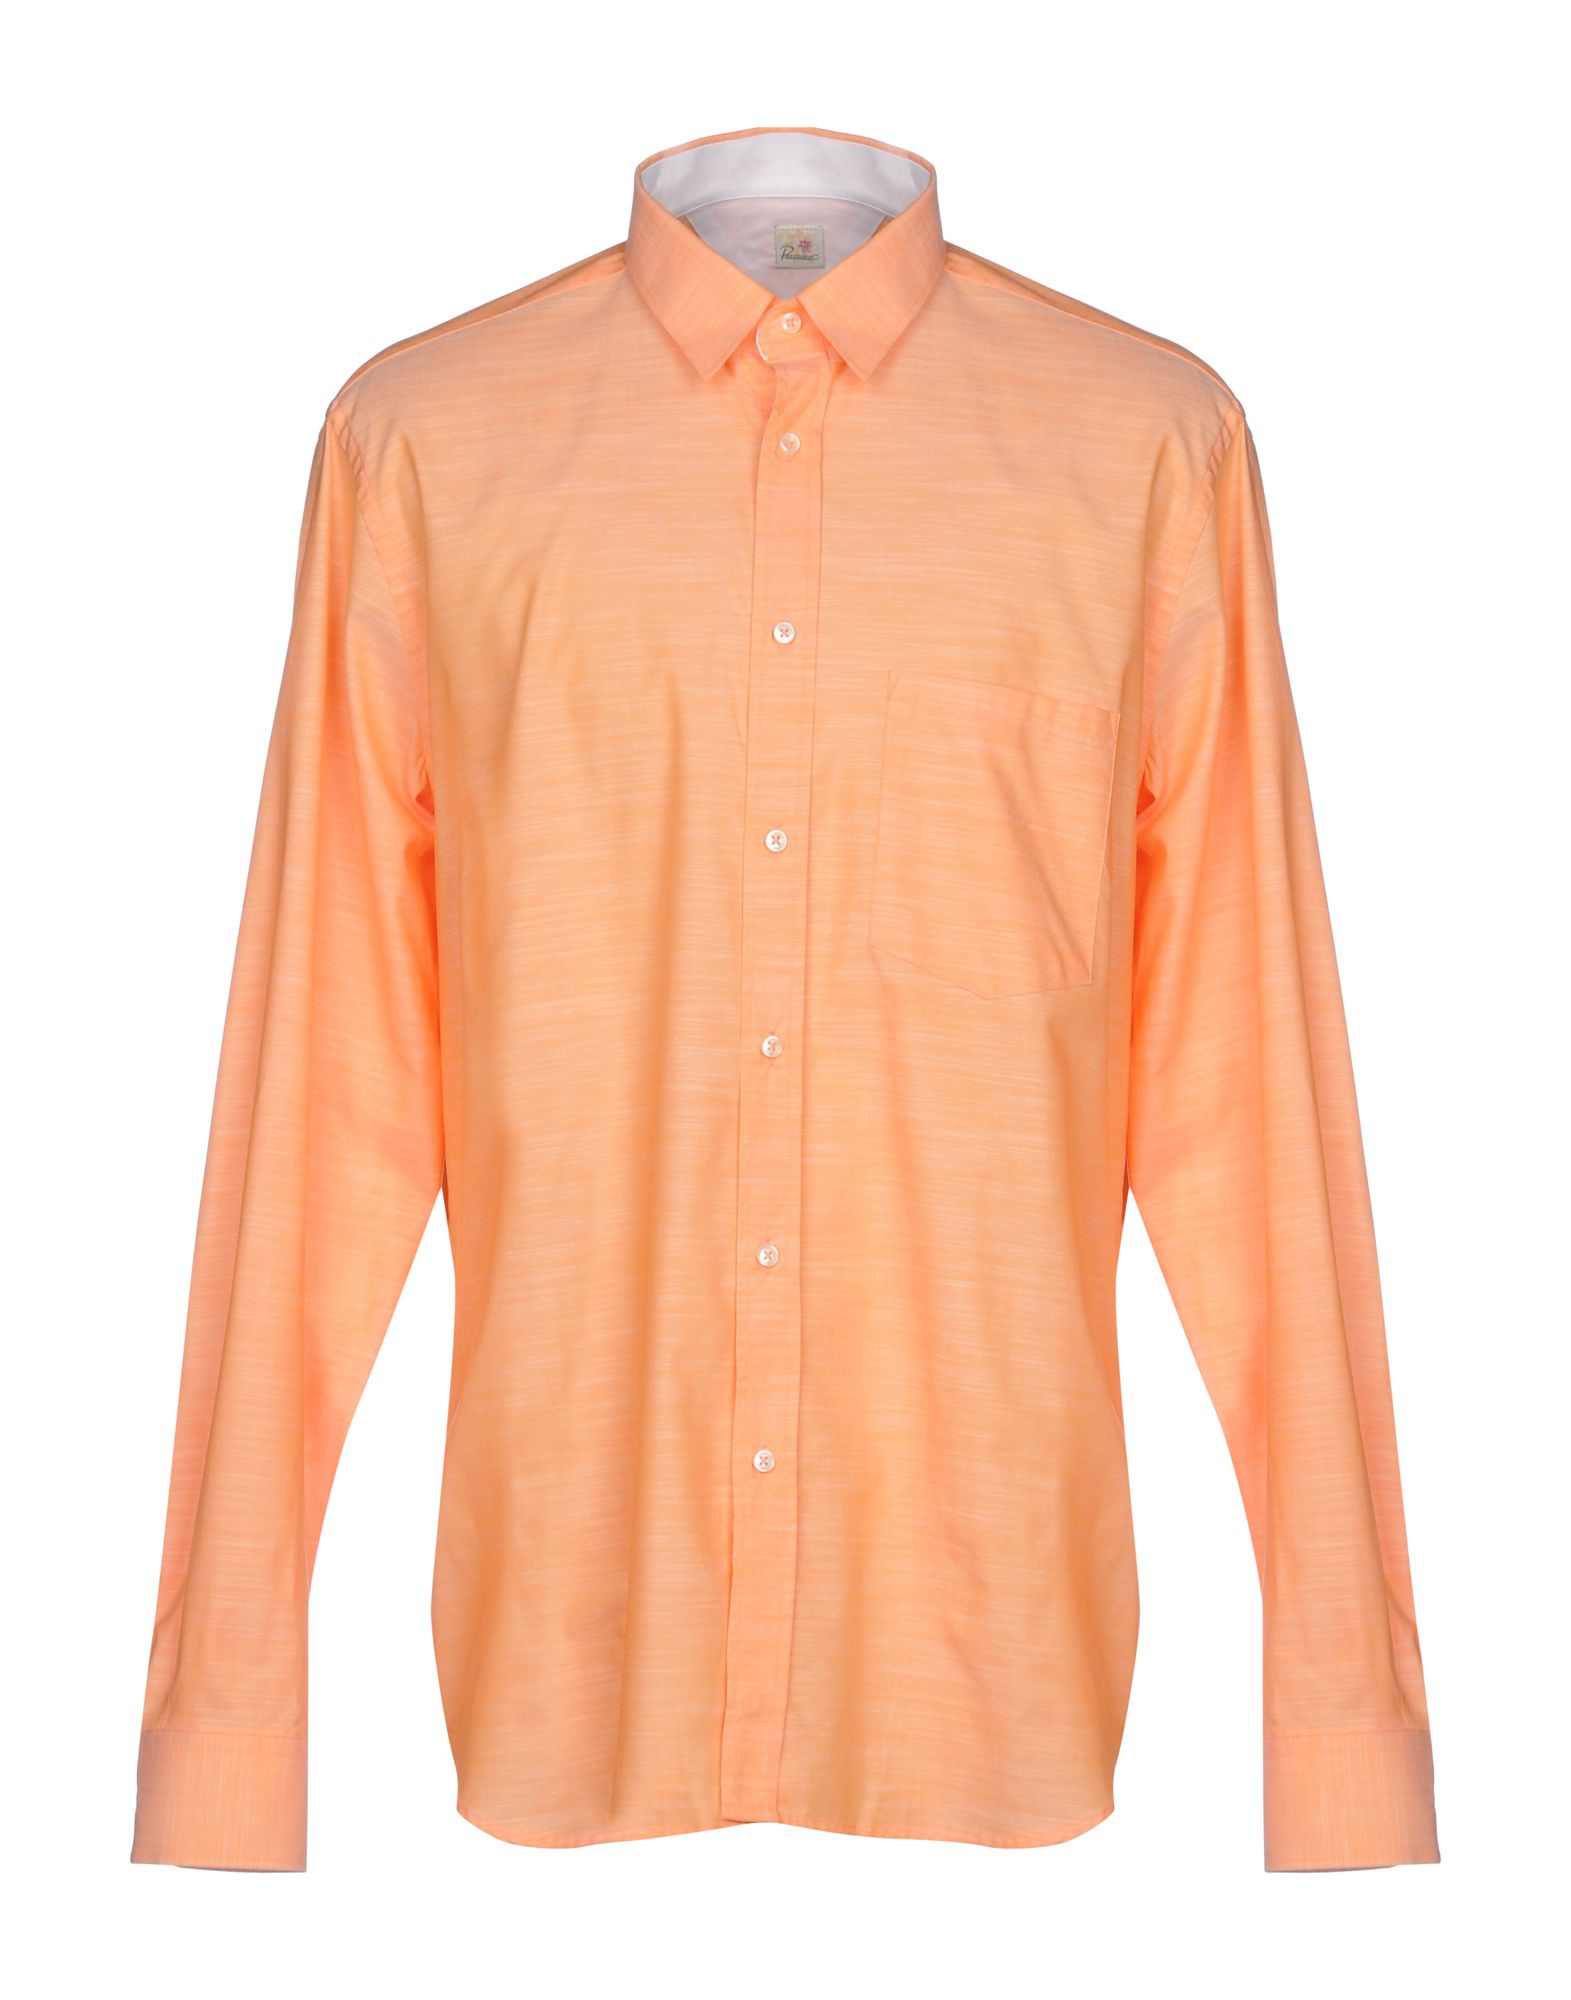 《送料無料》PANAMA メンズ シャツ オレンジ XL コットン 100%